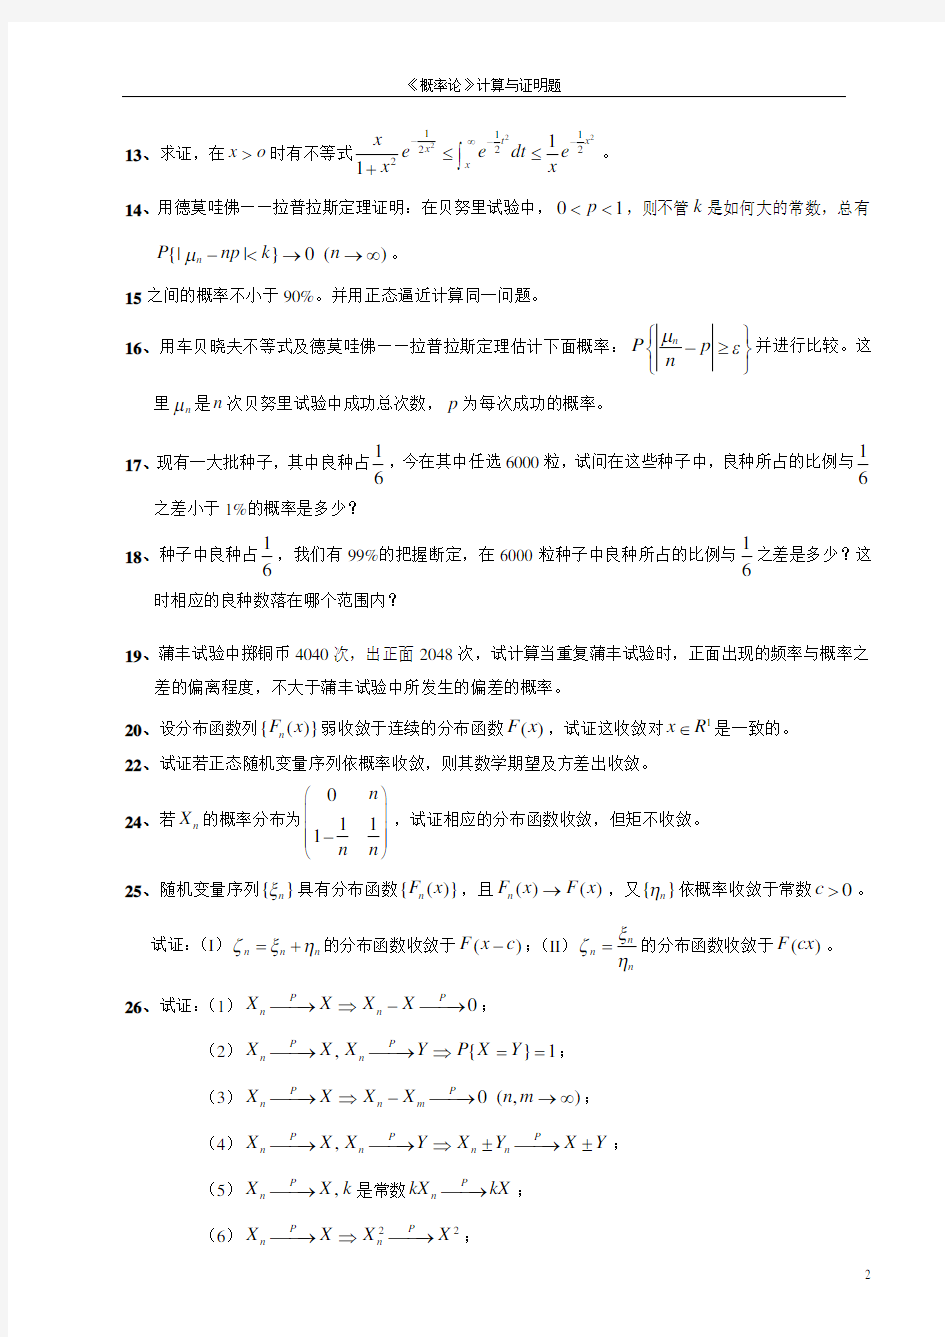 李贤平 第2版《概率论基础》第五章答案